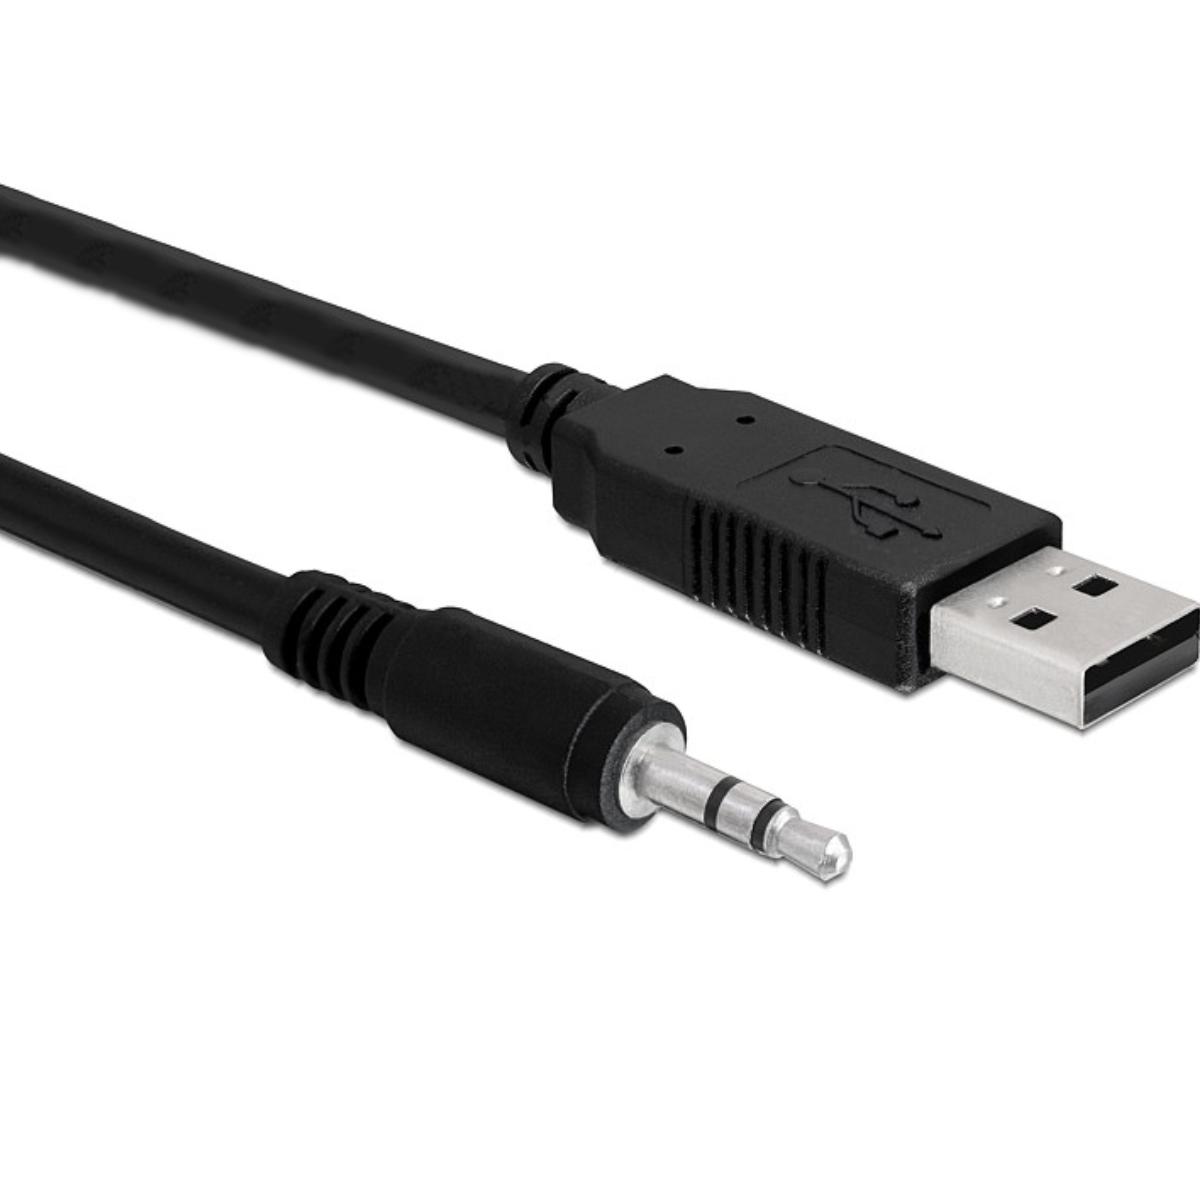 Jack kabel - Stereo - USB kabel - Delock